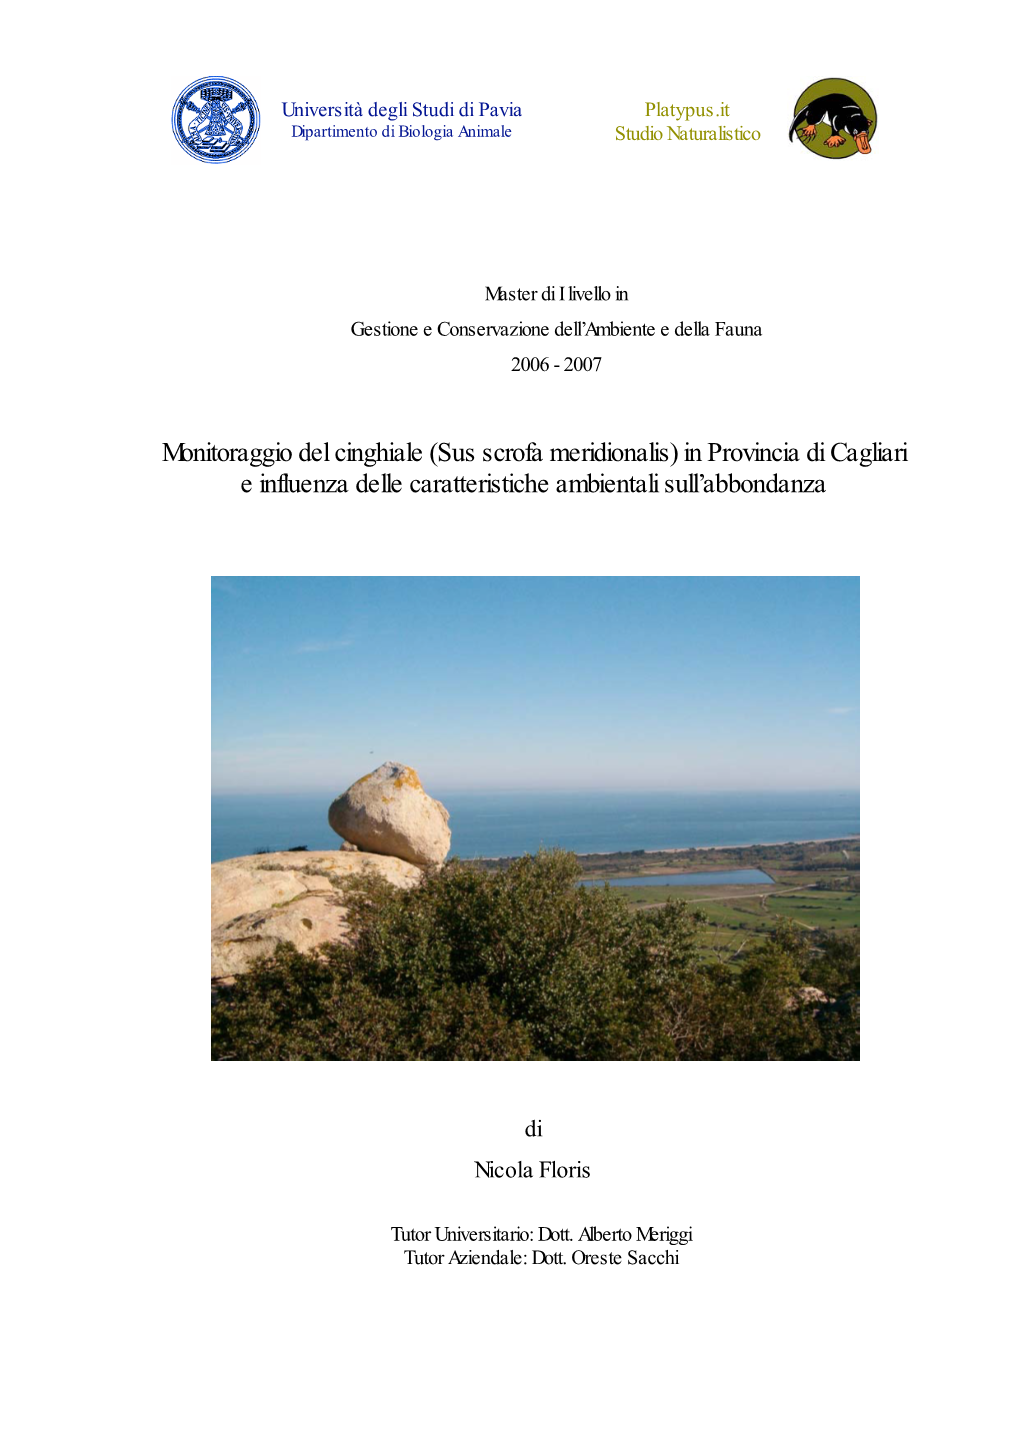 Monitoraggio Del Cinghiale (Sus Scrofa Meridionalis) in Provincia Di Cagliari E Influenza Delle Caratteristiche Ambientali Sull’Abbondanza